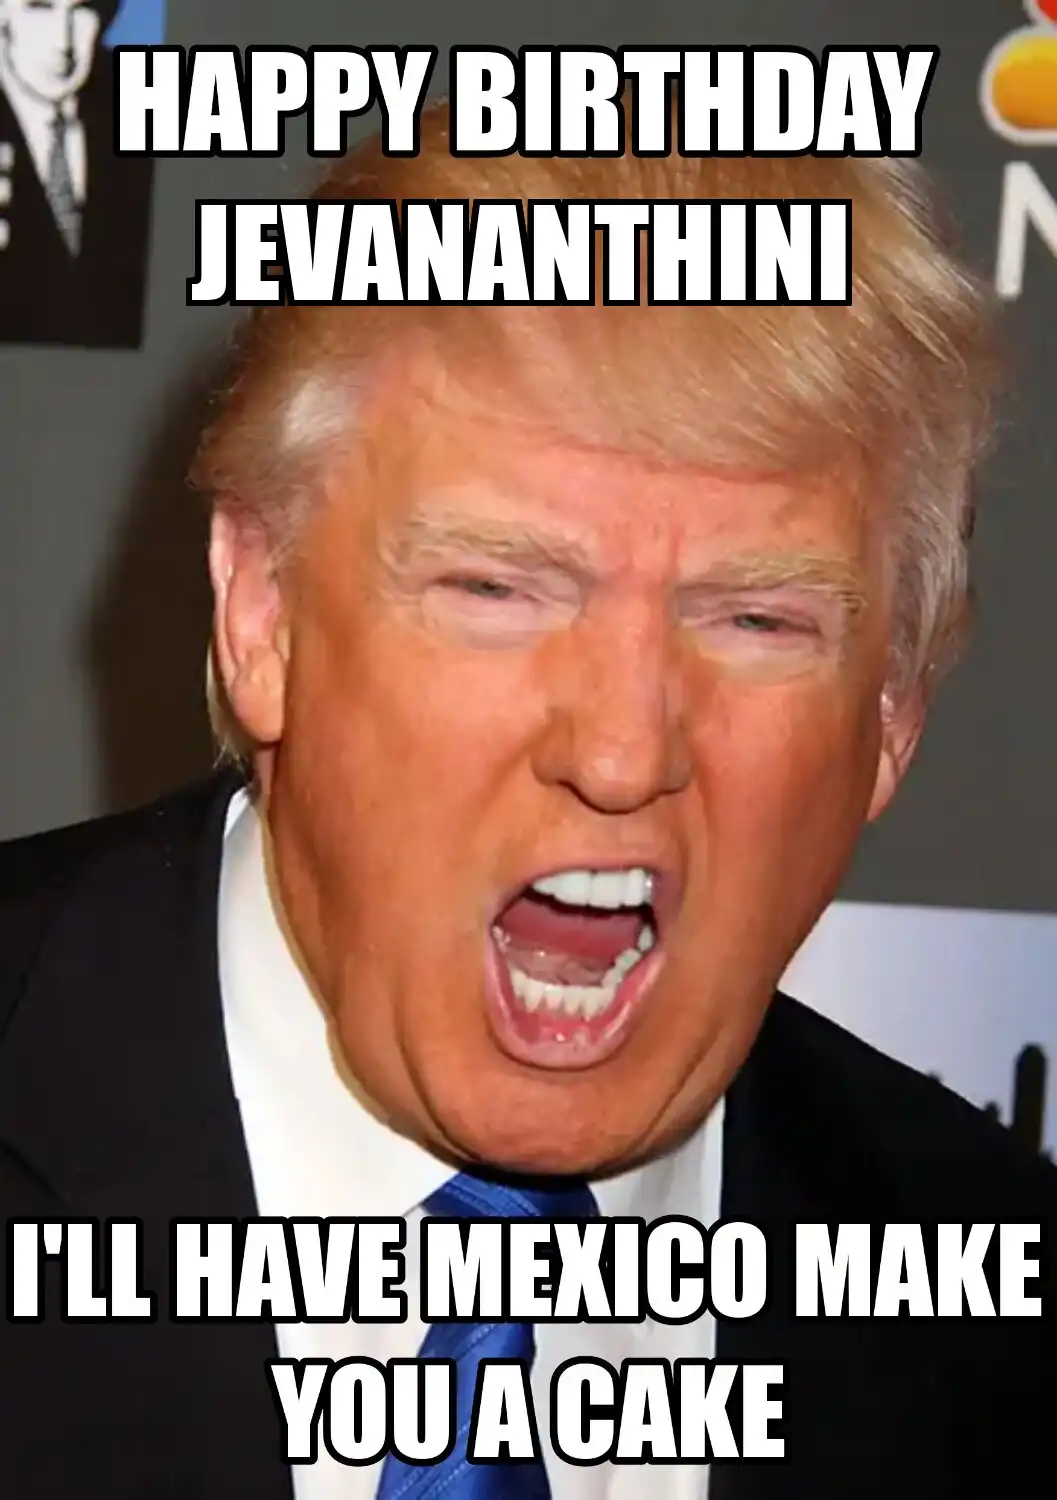 Happy Birthday Jevananthini Mexico Make You A Cake Meme